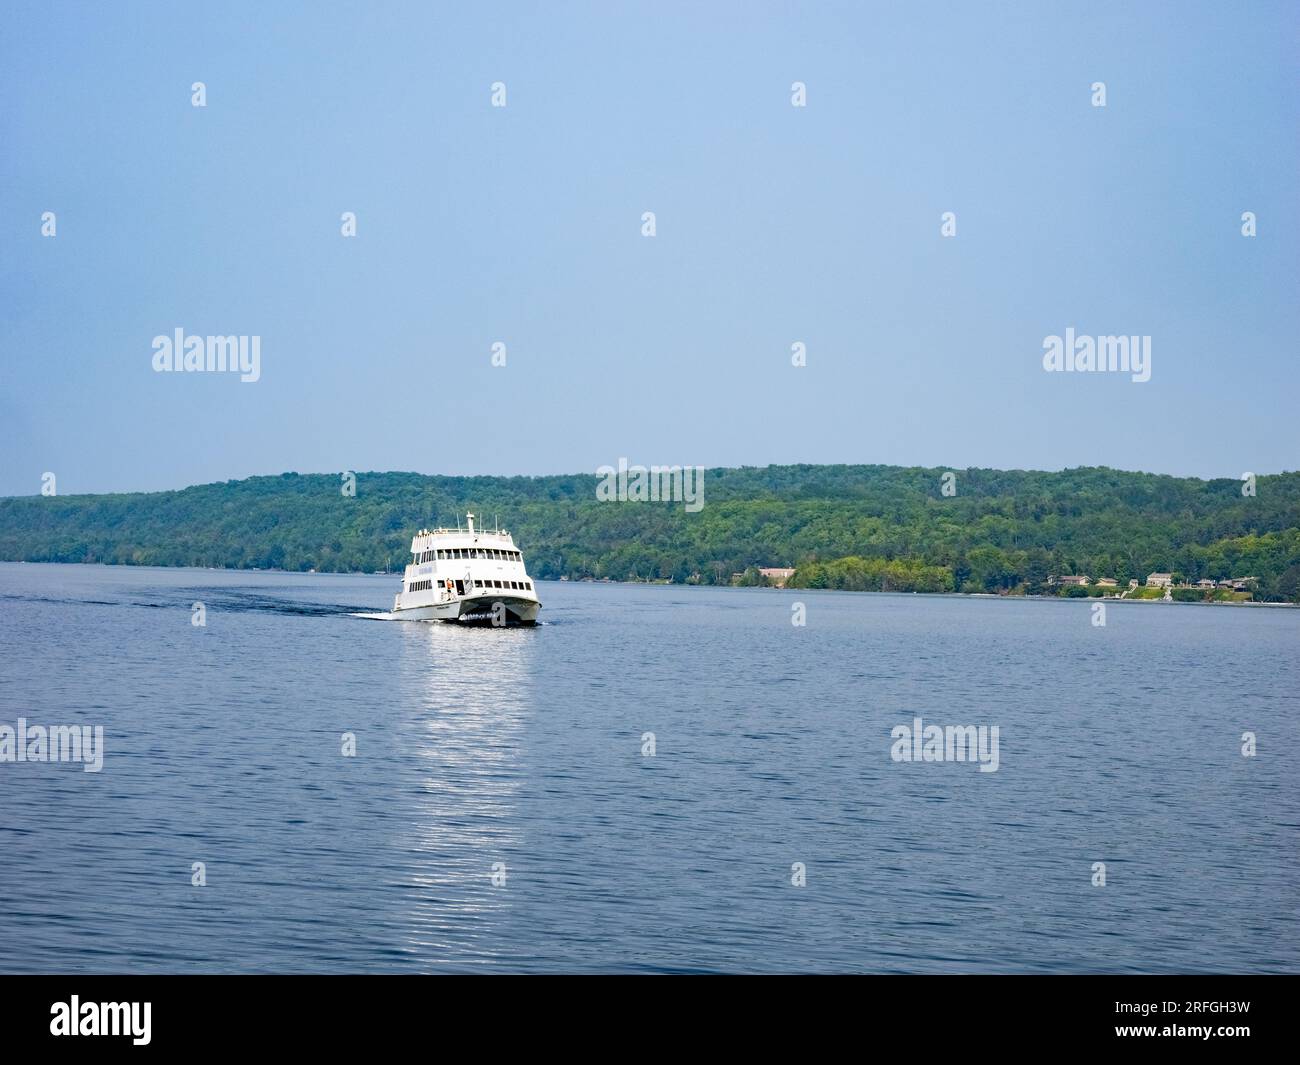 Barco de excursión a orillas del lago en el Lago Superior en la península superior de Michigan, EE.UU Foto de stock